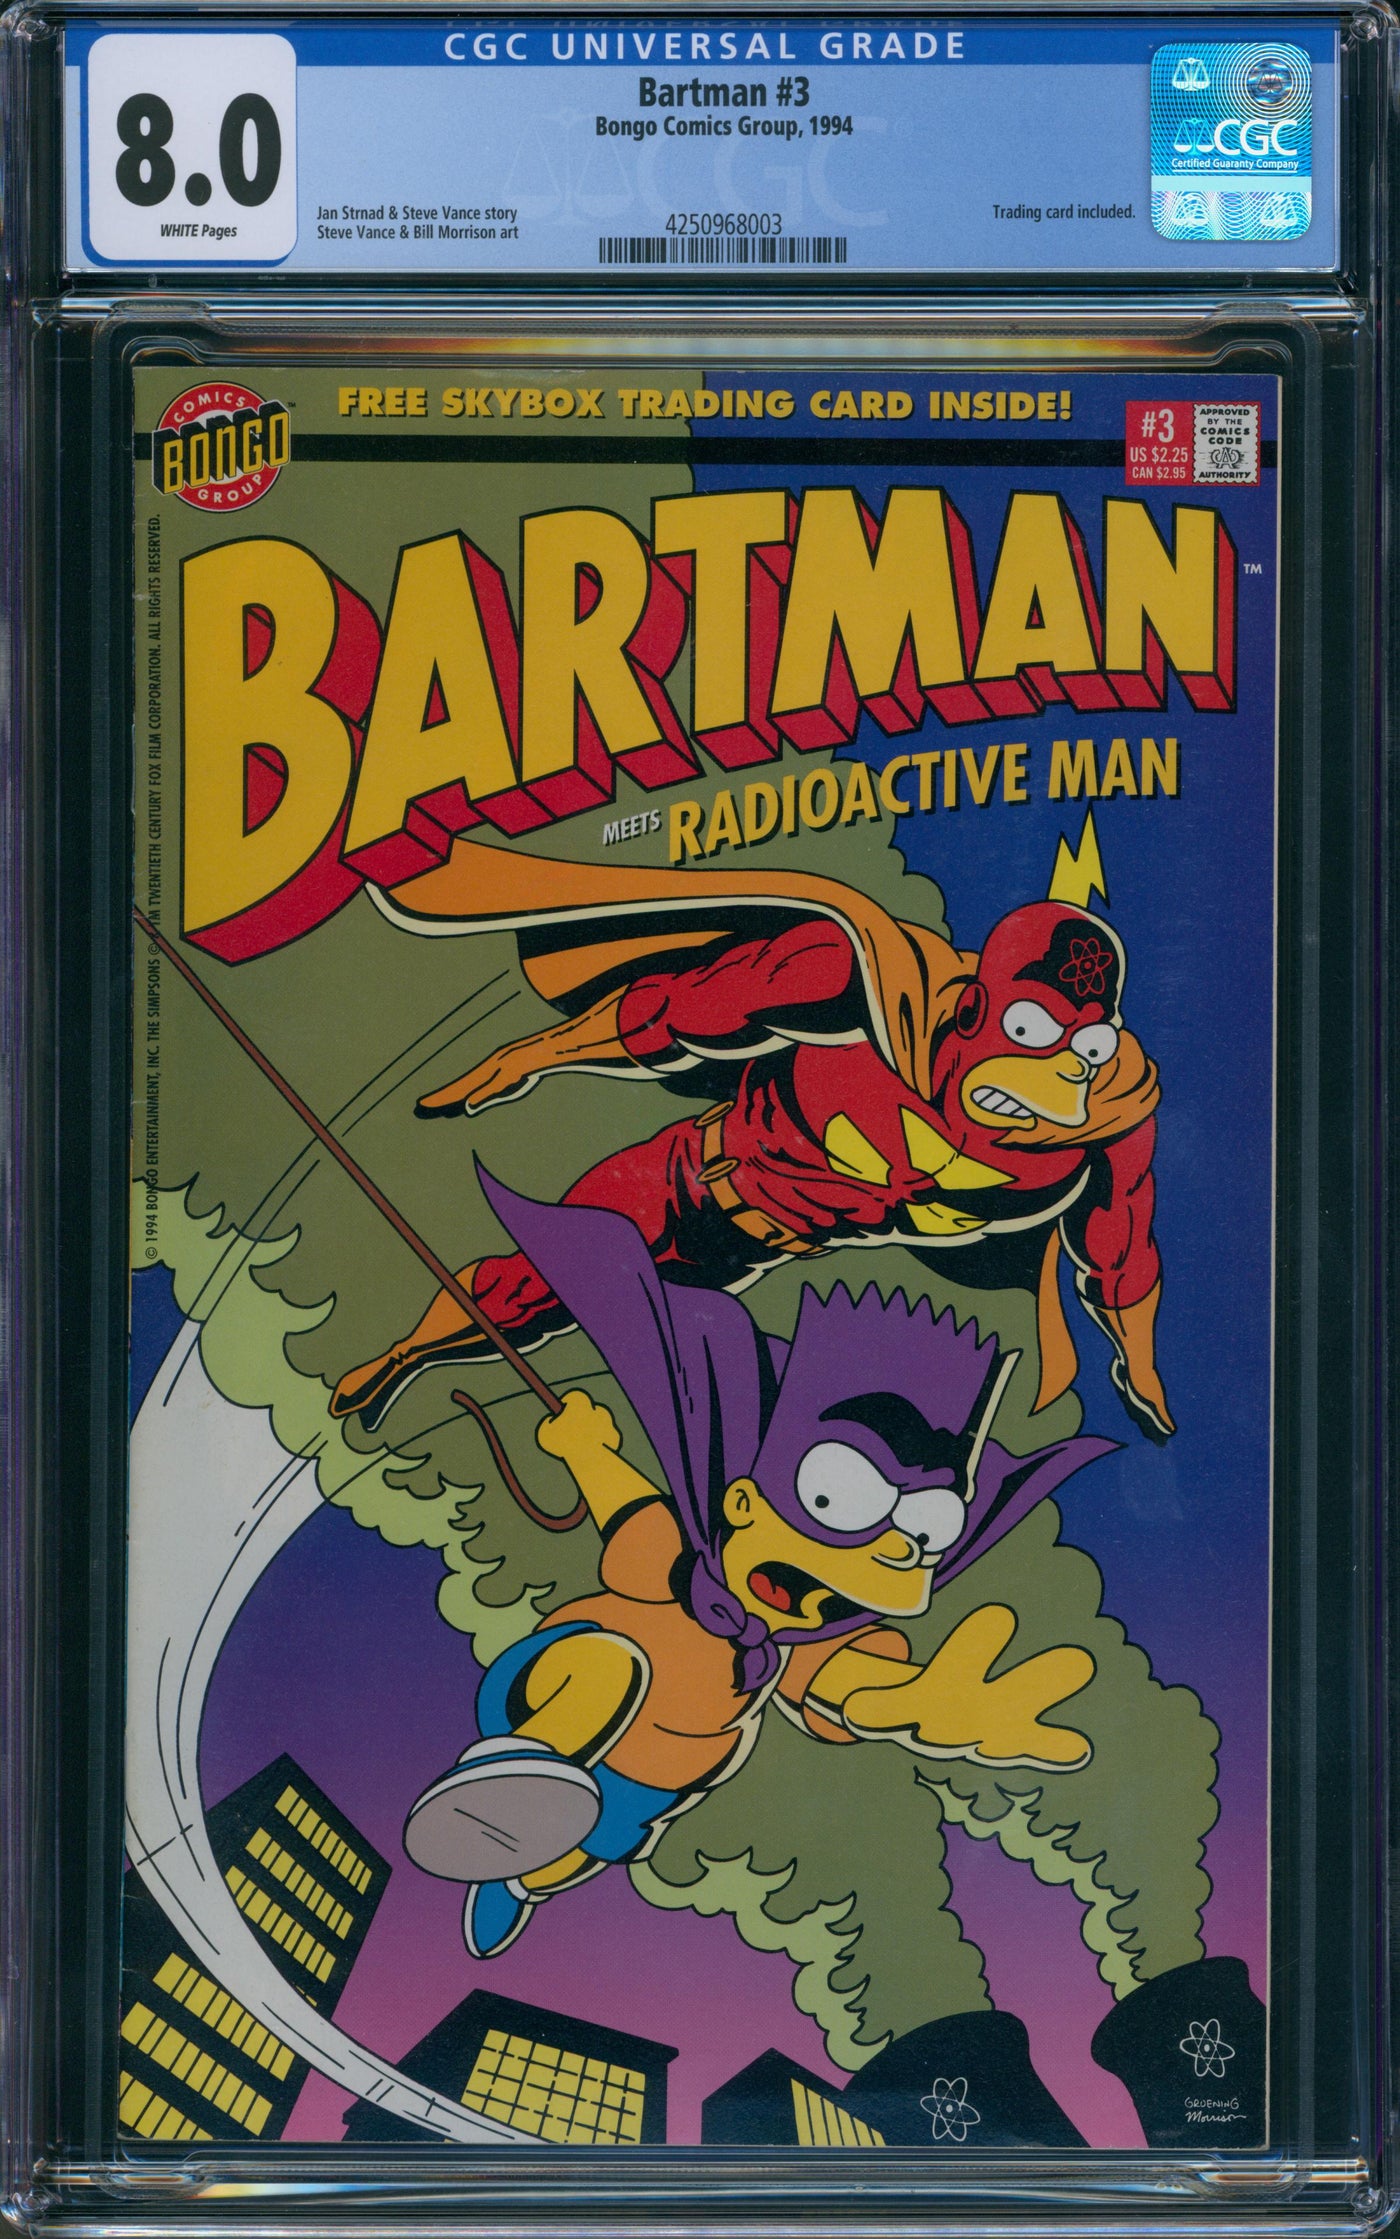 Bartman #3 1994 CGC 8.0